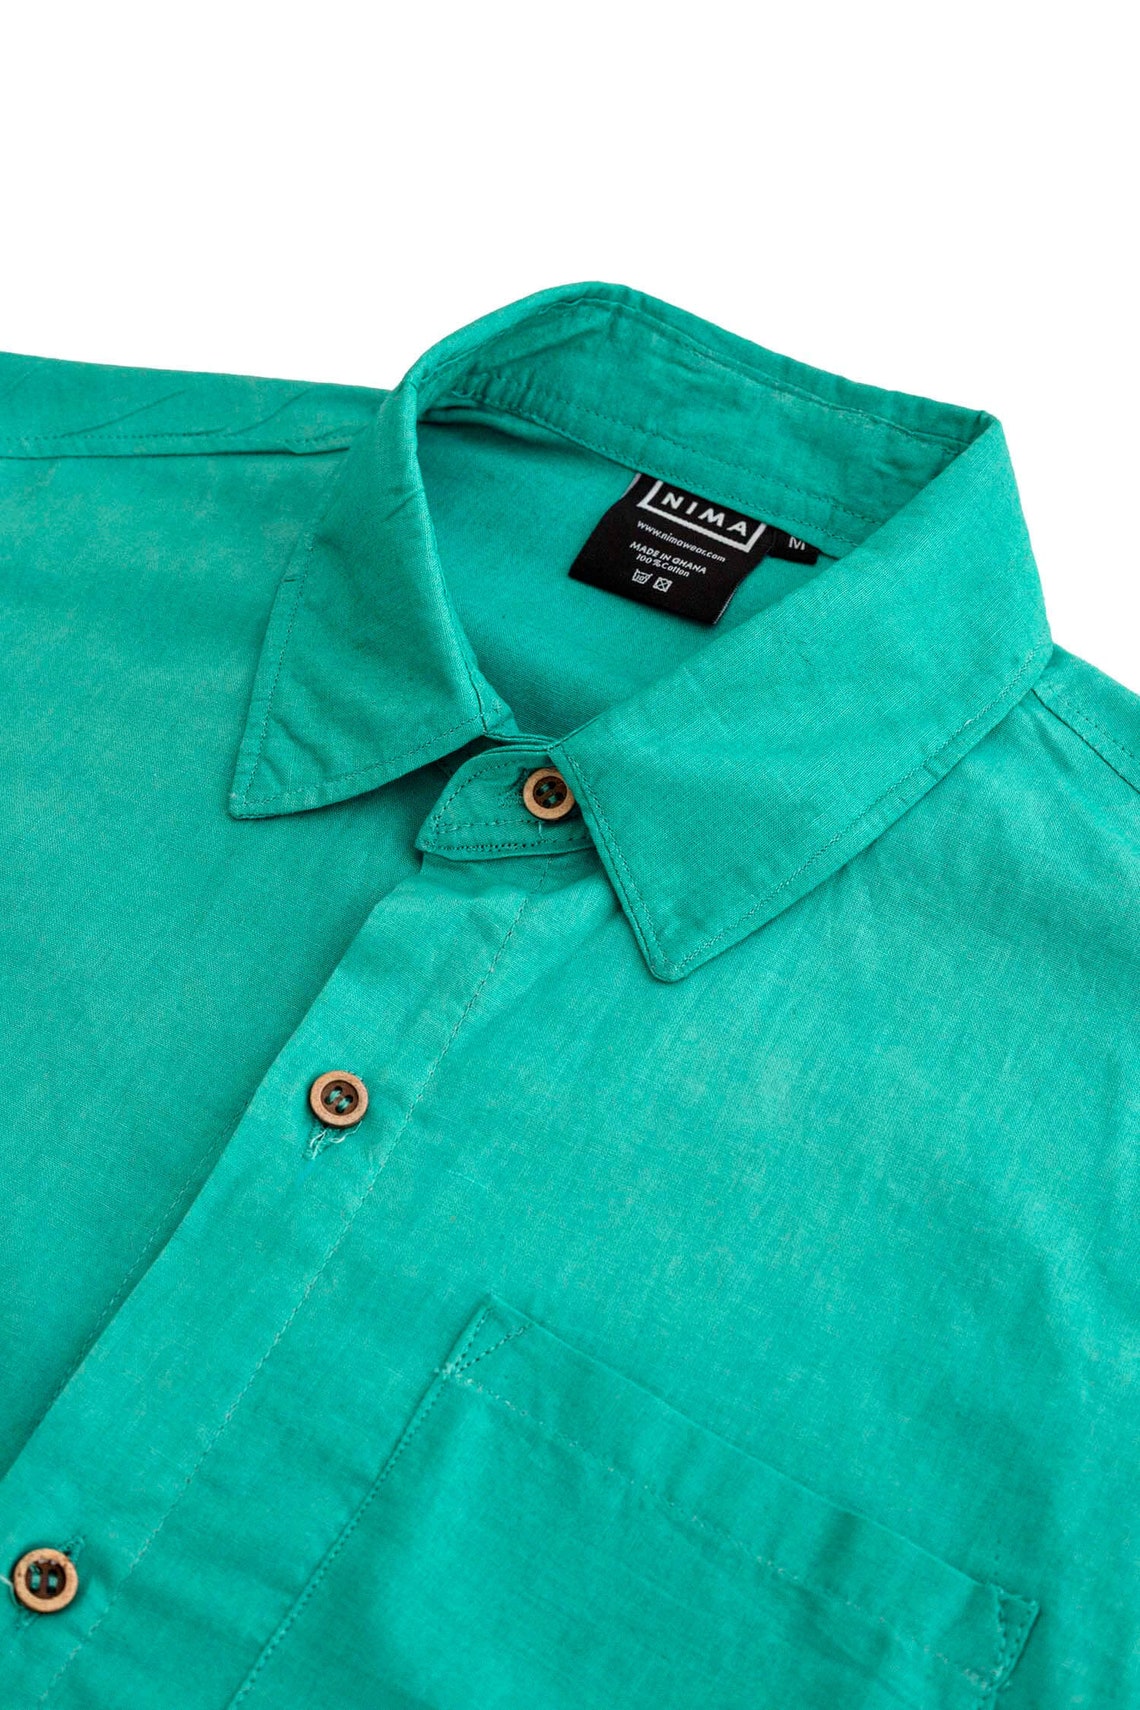 Emerald Green Cotton Shirt African Clothing Green Batik Shirt Summer ...